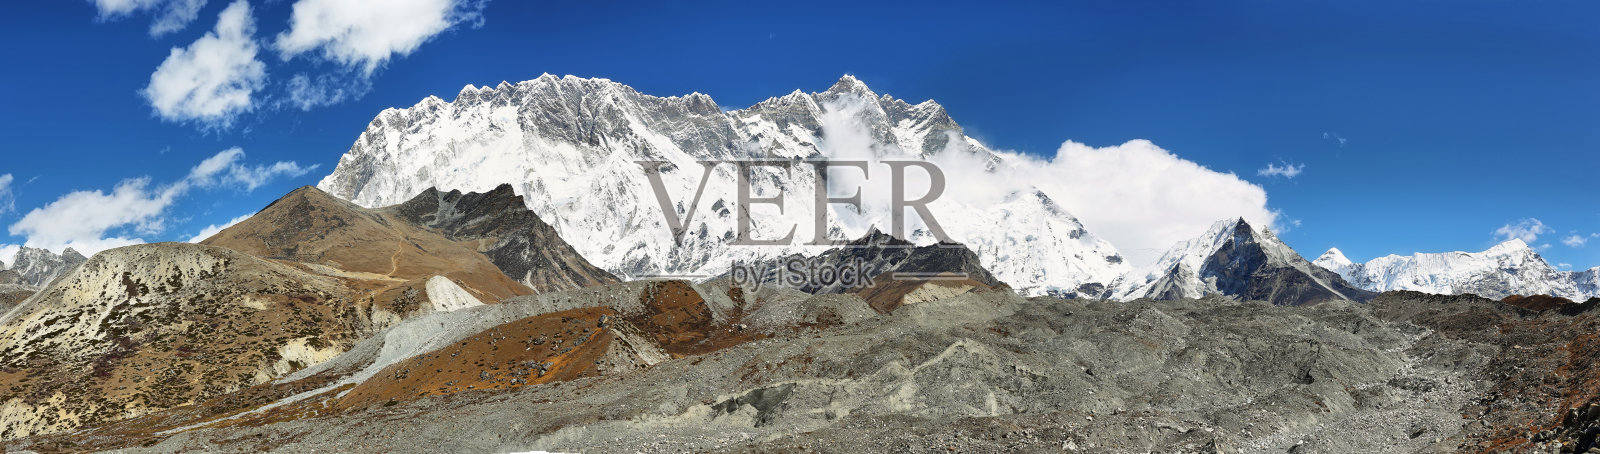 Lhotse峰值的观点照片摄影图片